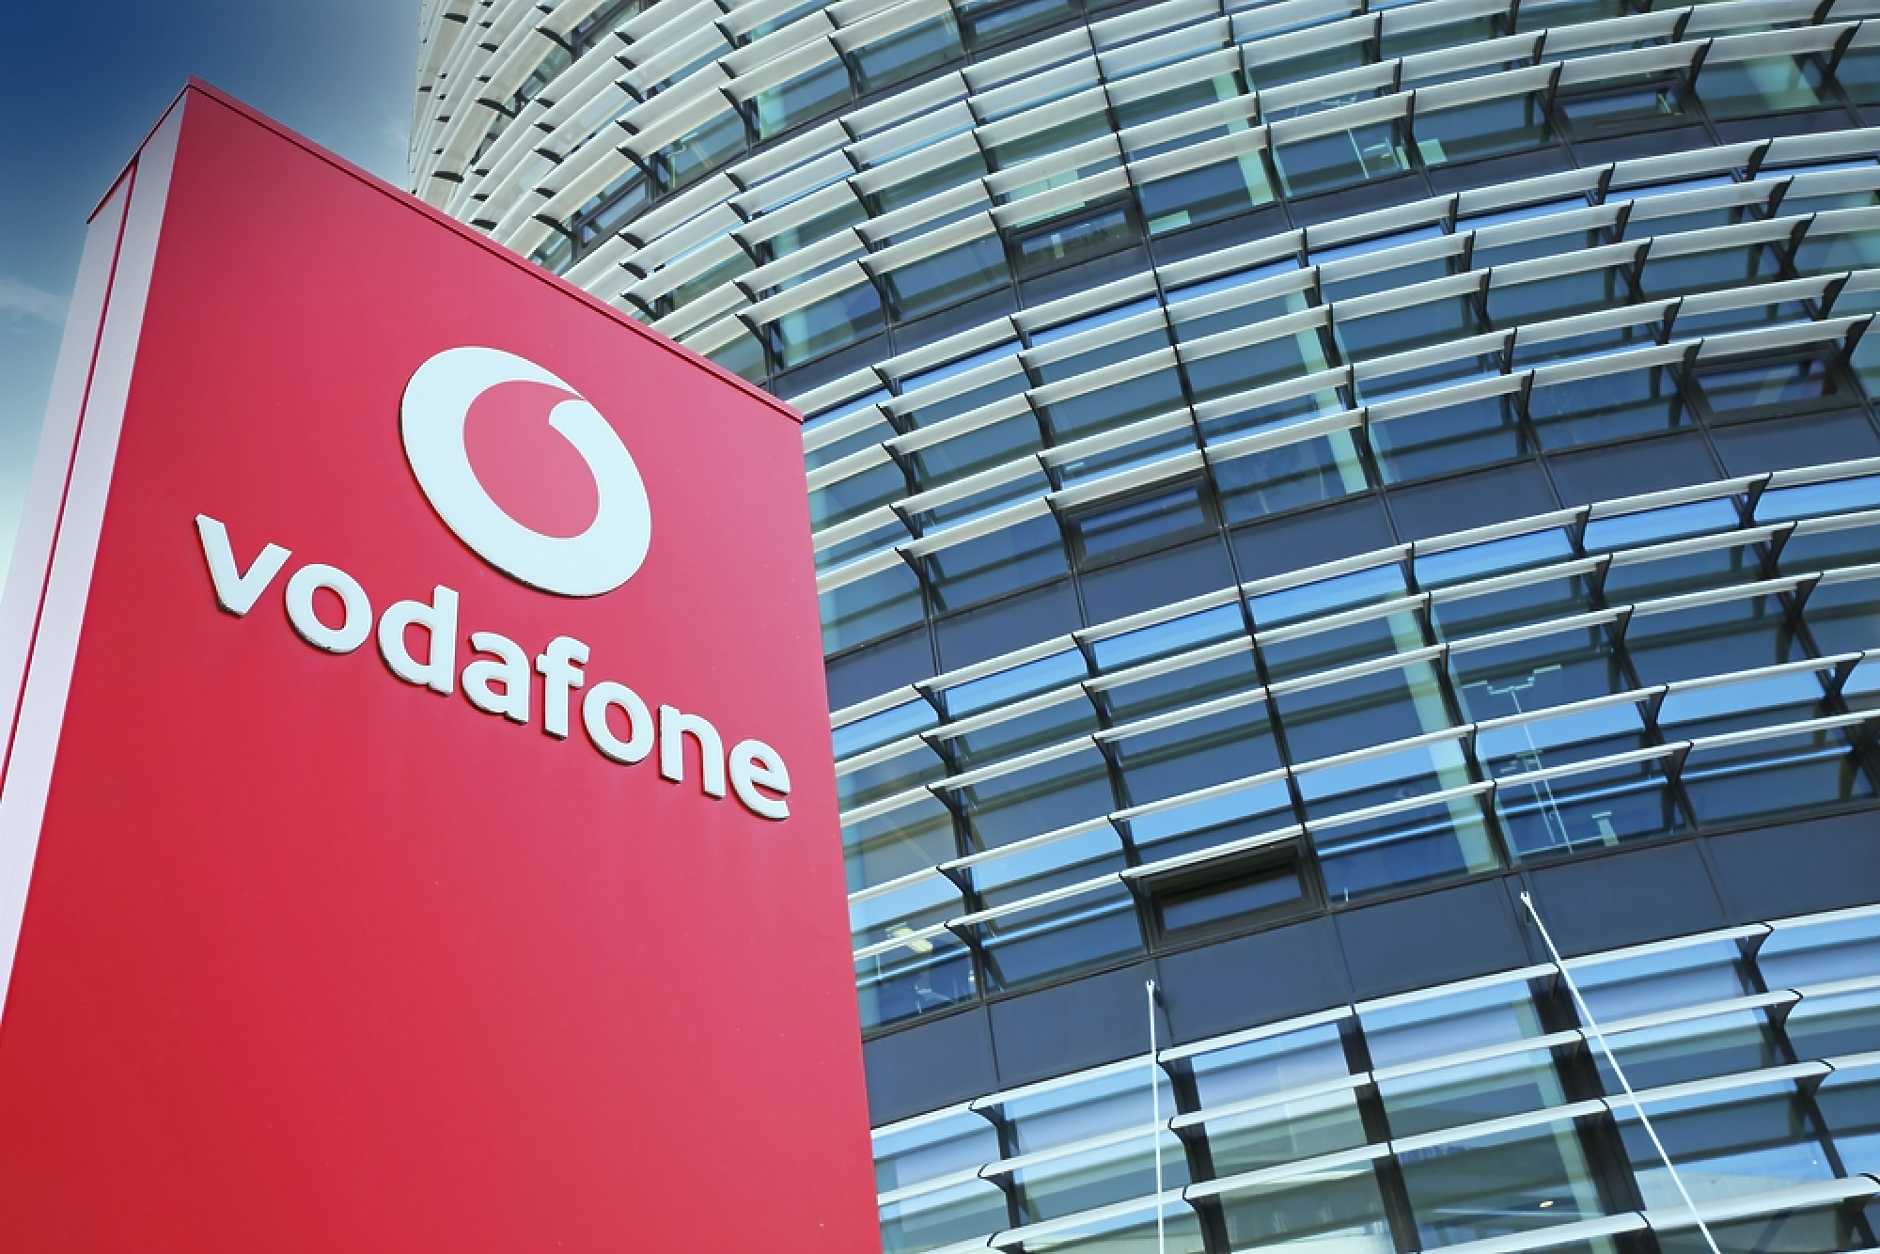 Британският регулатор ще разследва сливането на Vodafone с Three